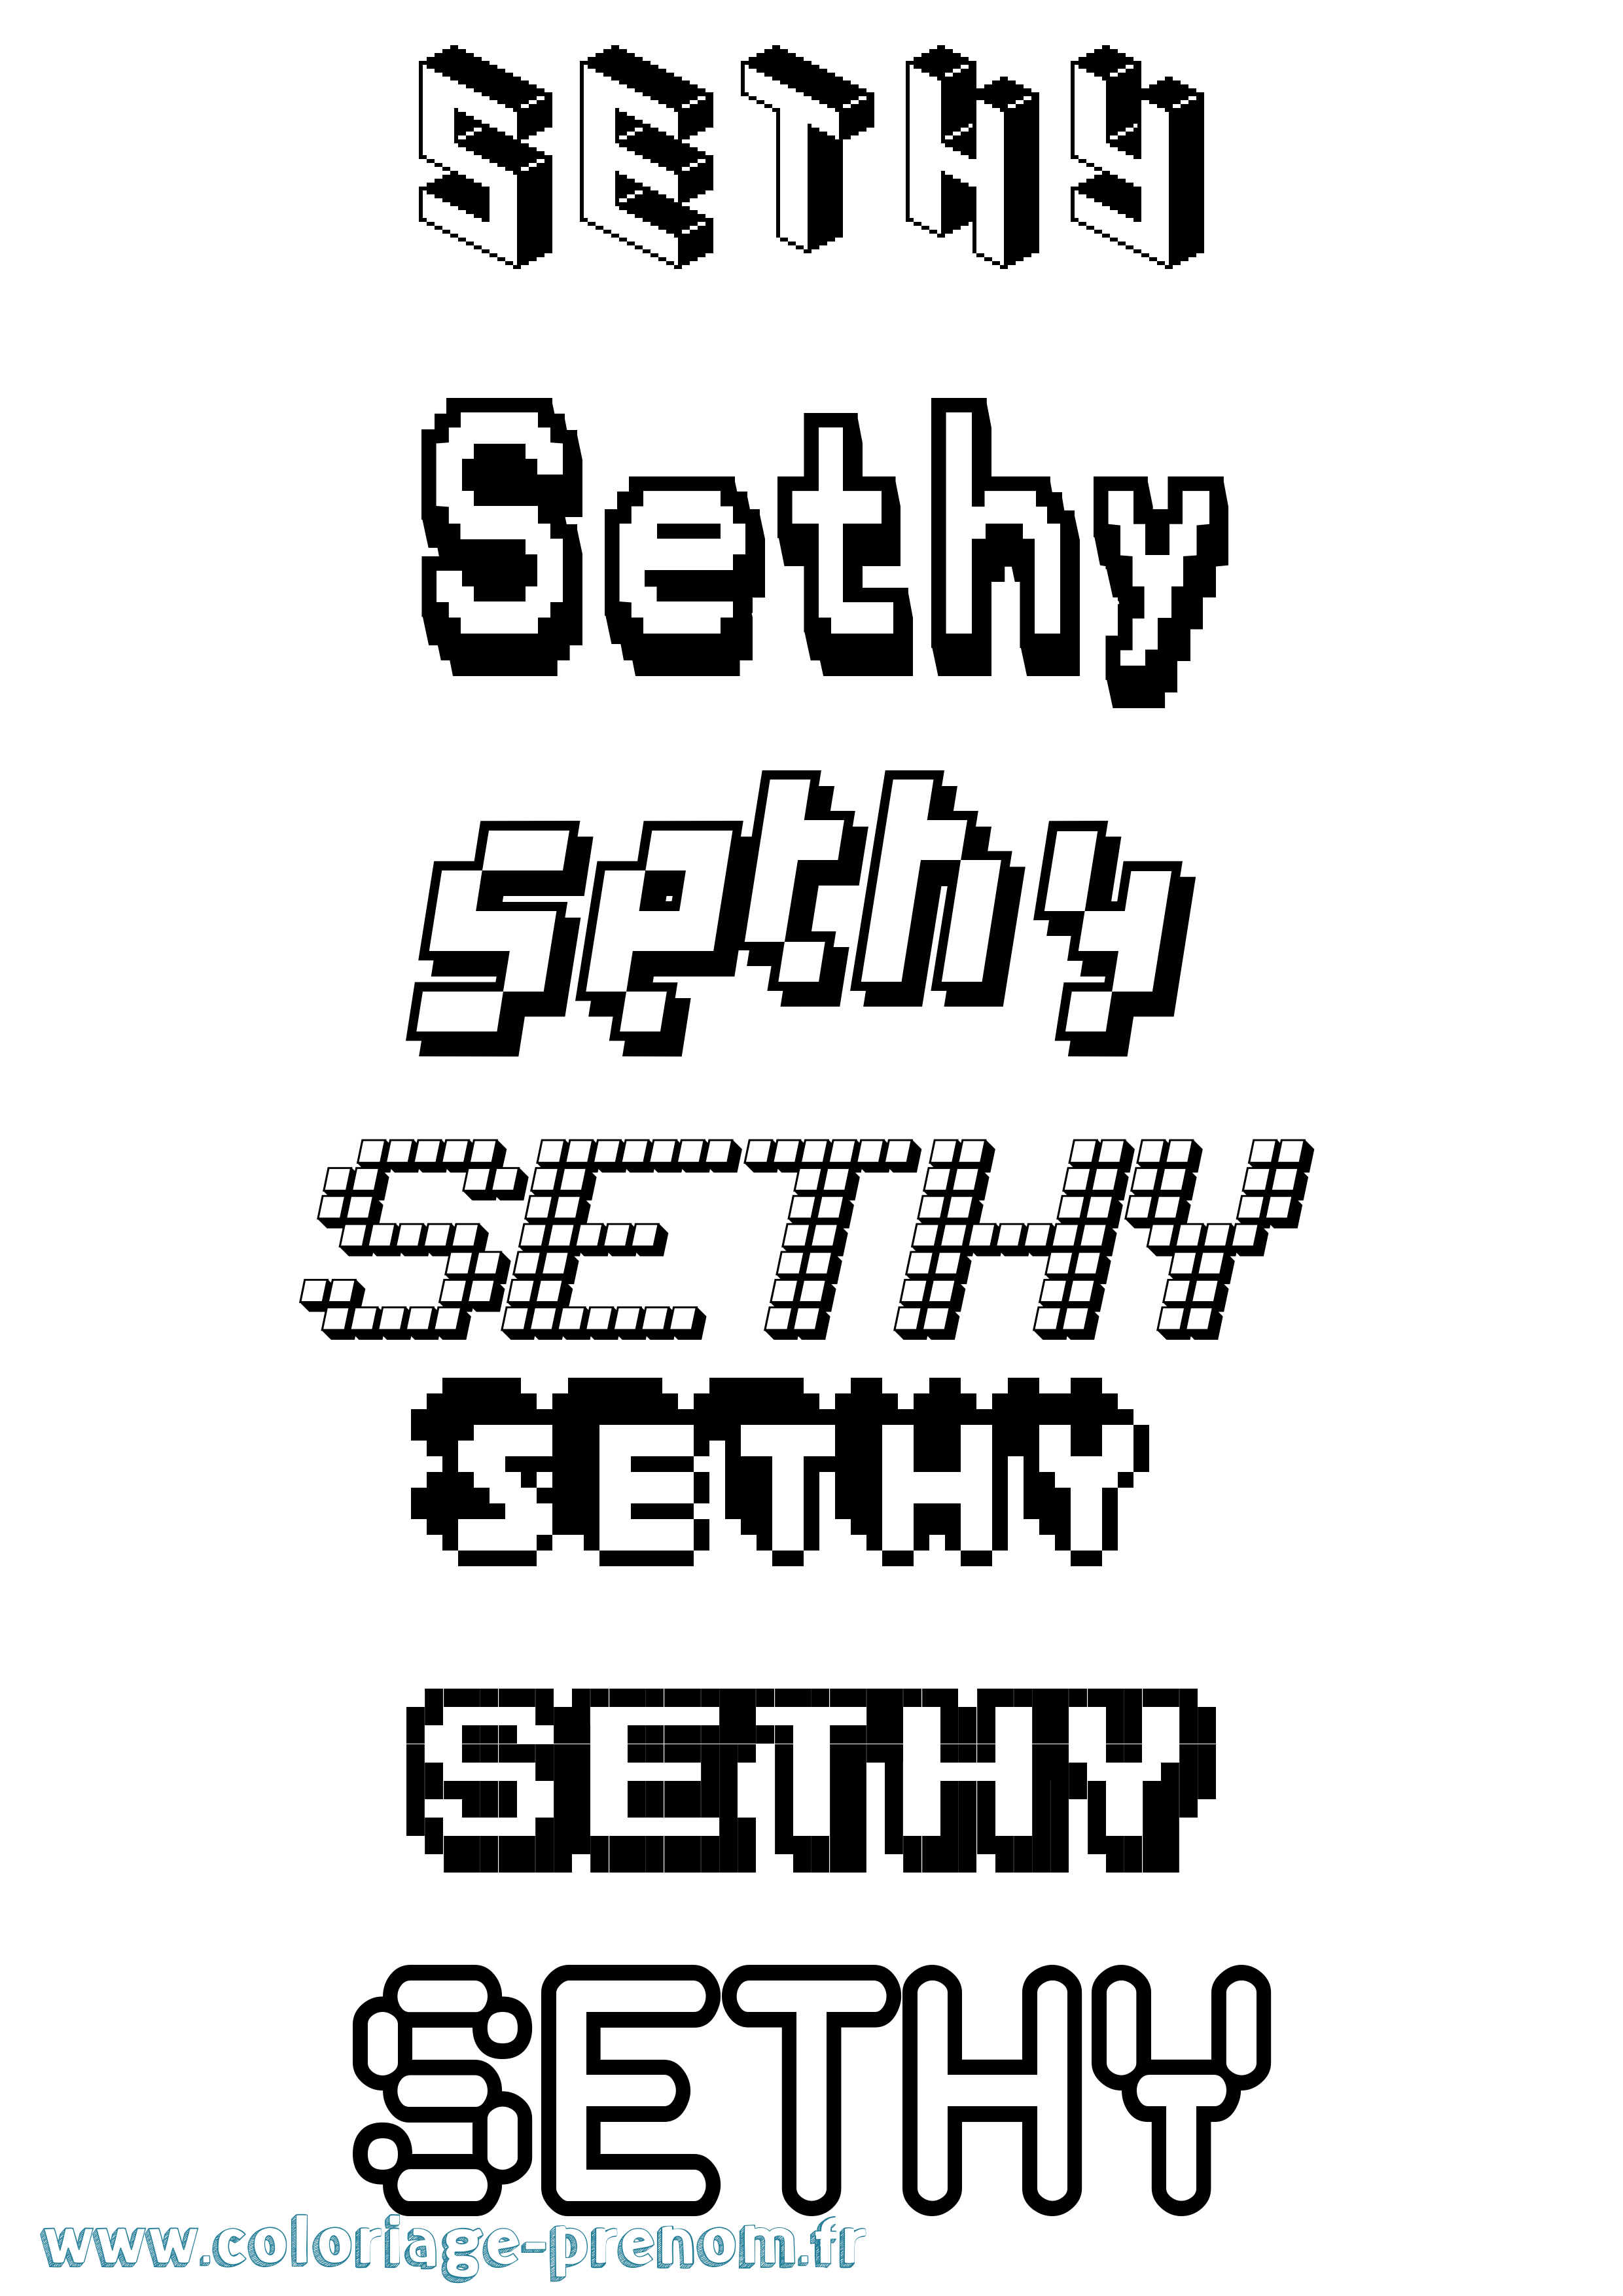 Coloriage prénom Sethy Pixel